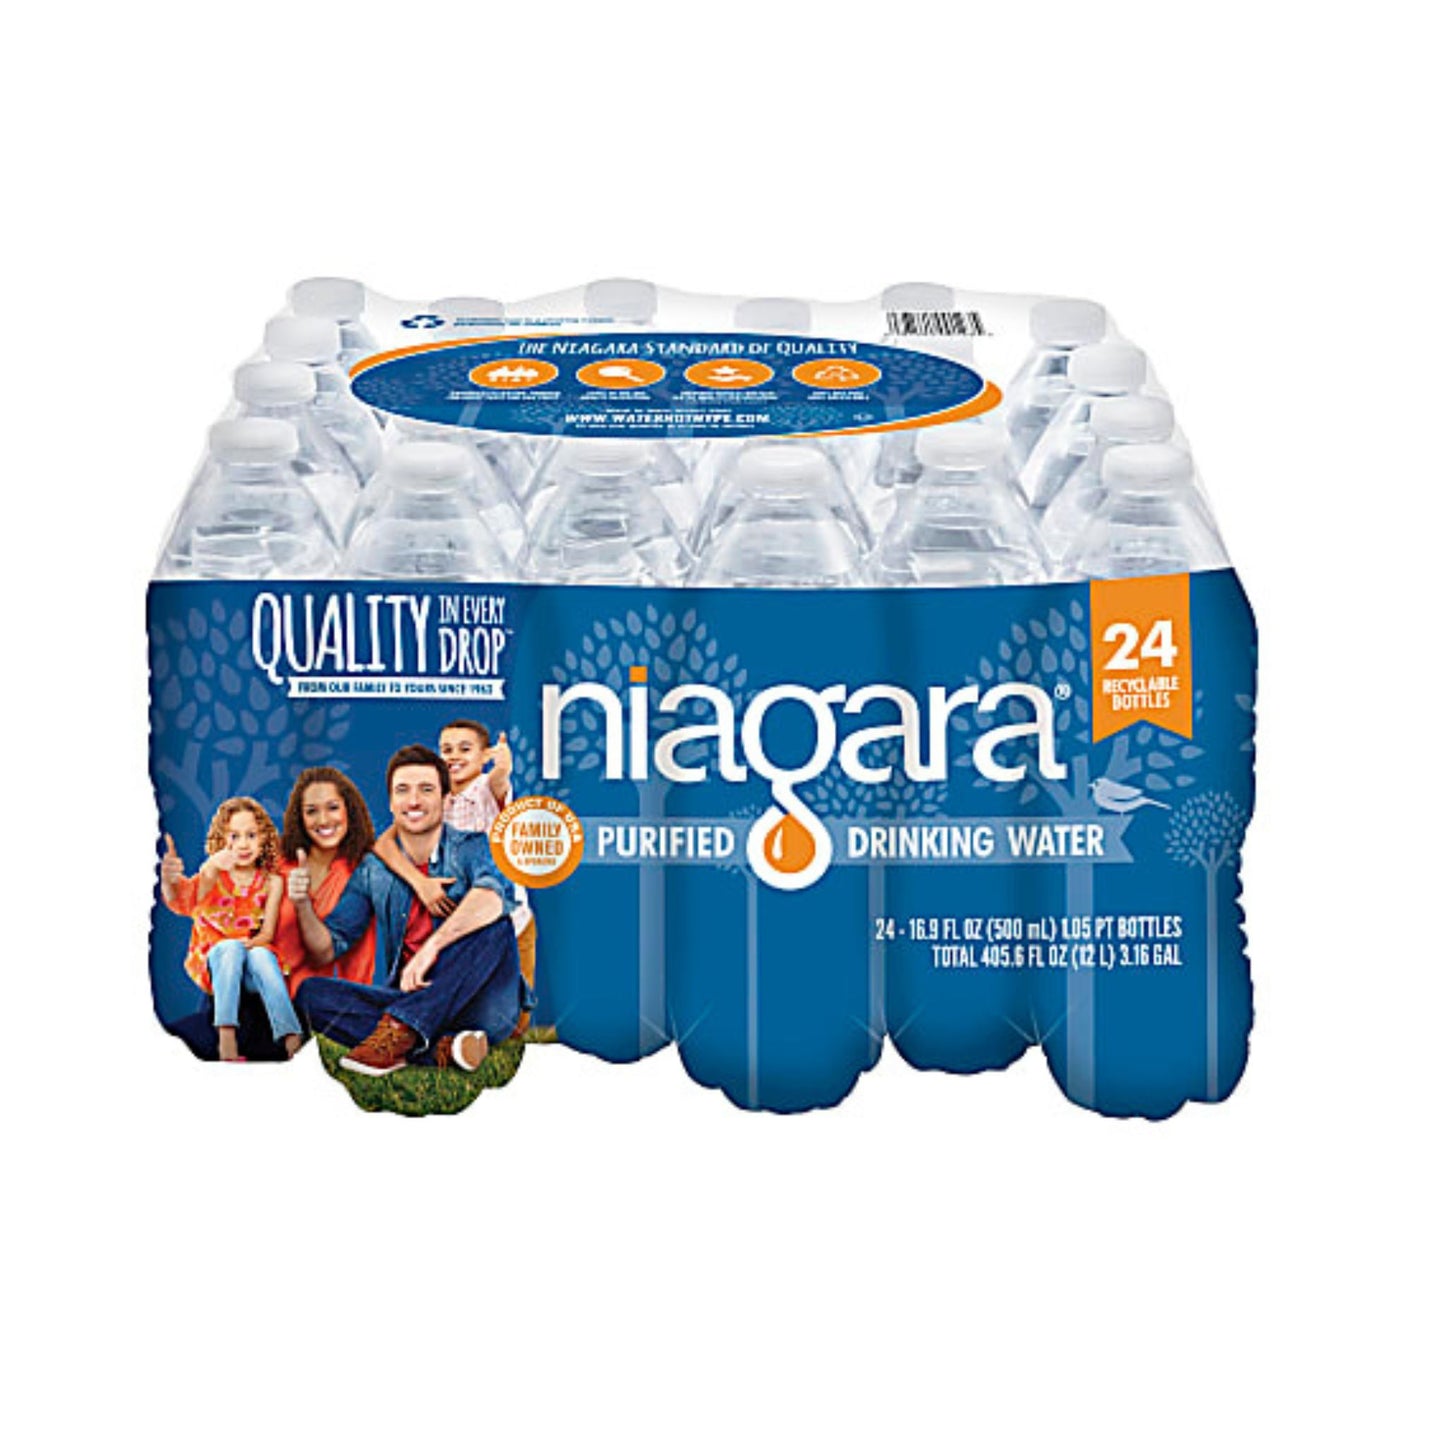 Niagara Purified Drinking Water Bottles 16.9 Fl Oz. Pack Of 24 Bottles